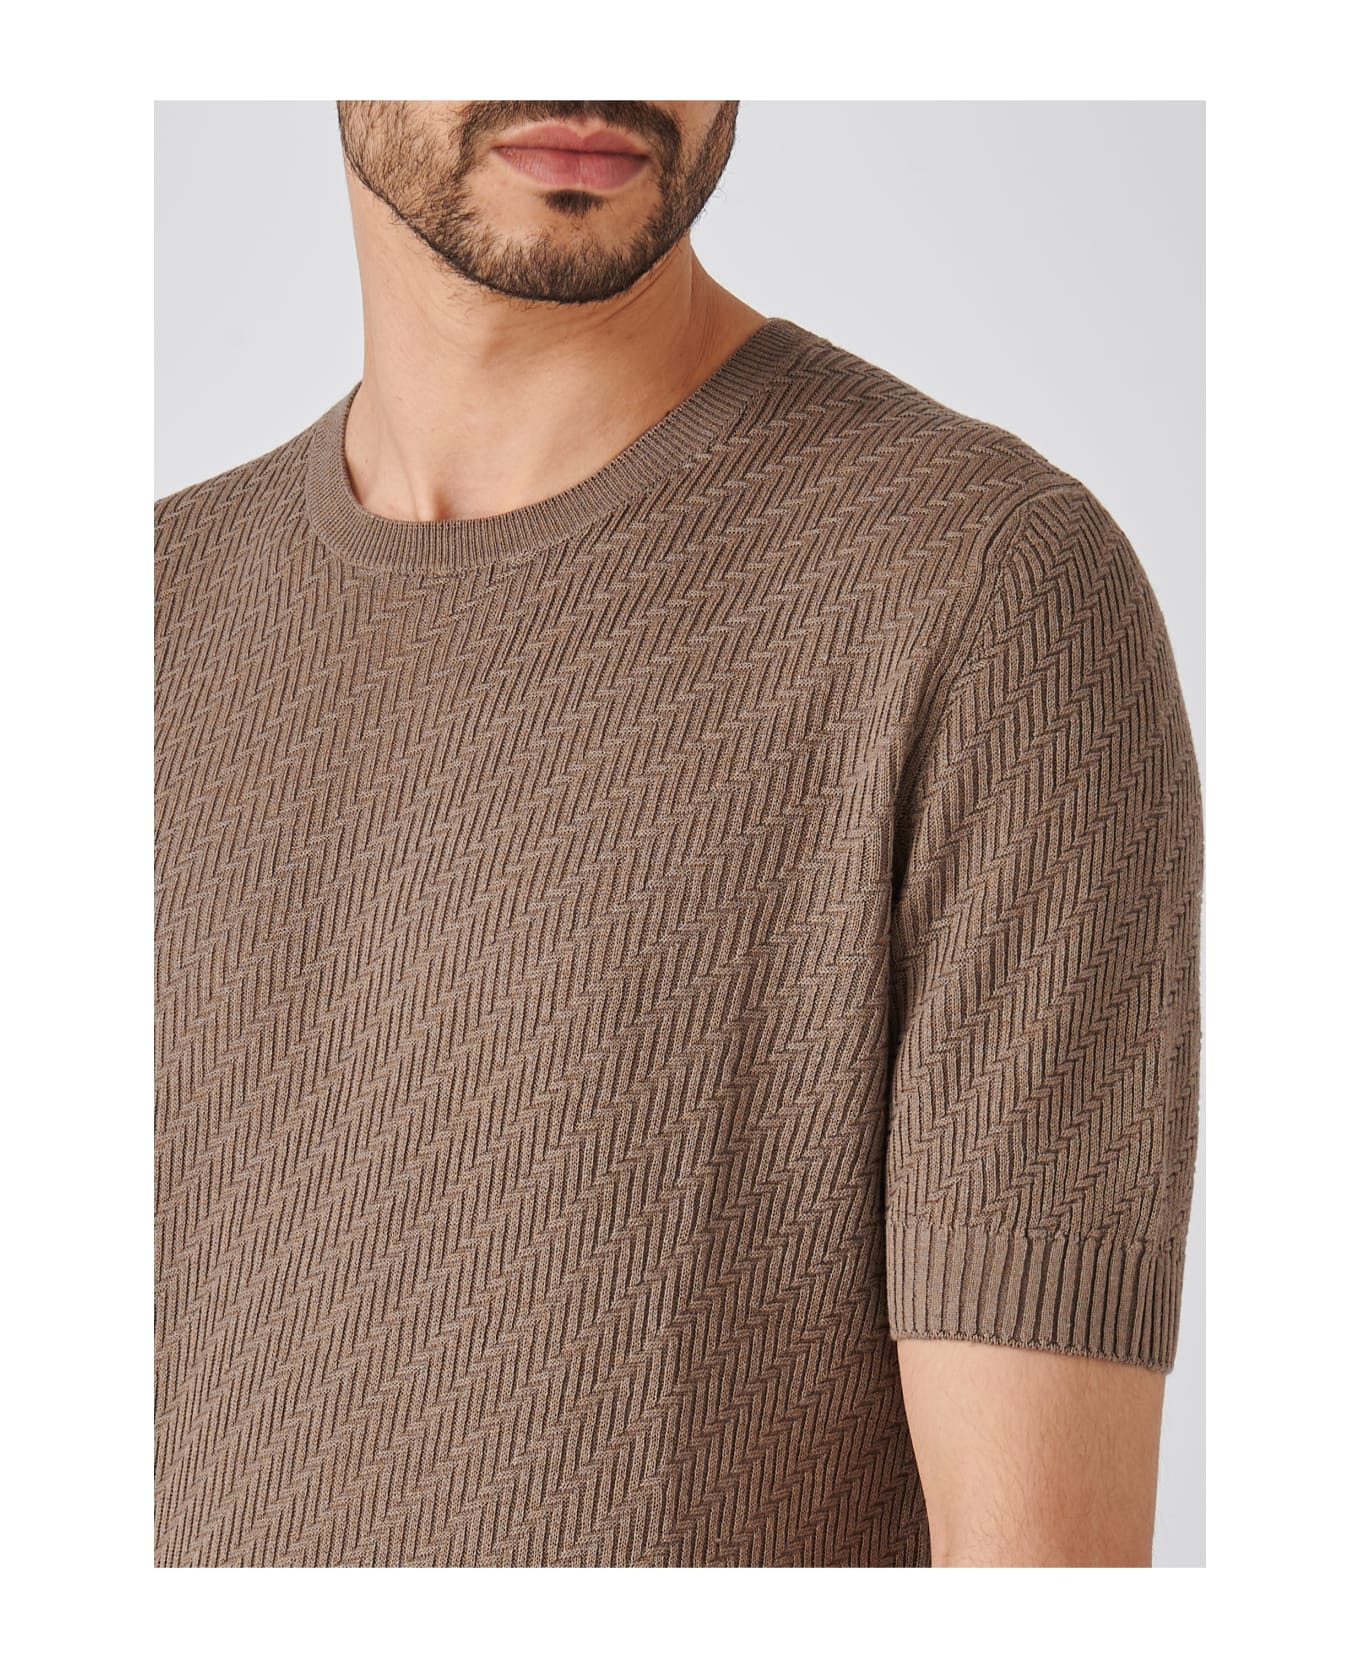 Gran Sasso Paricollo M/m Sweater - CORDA